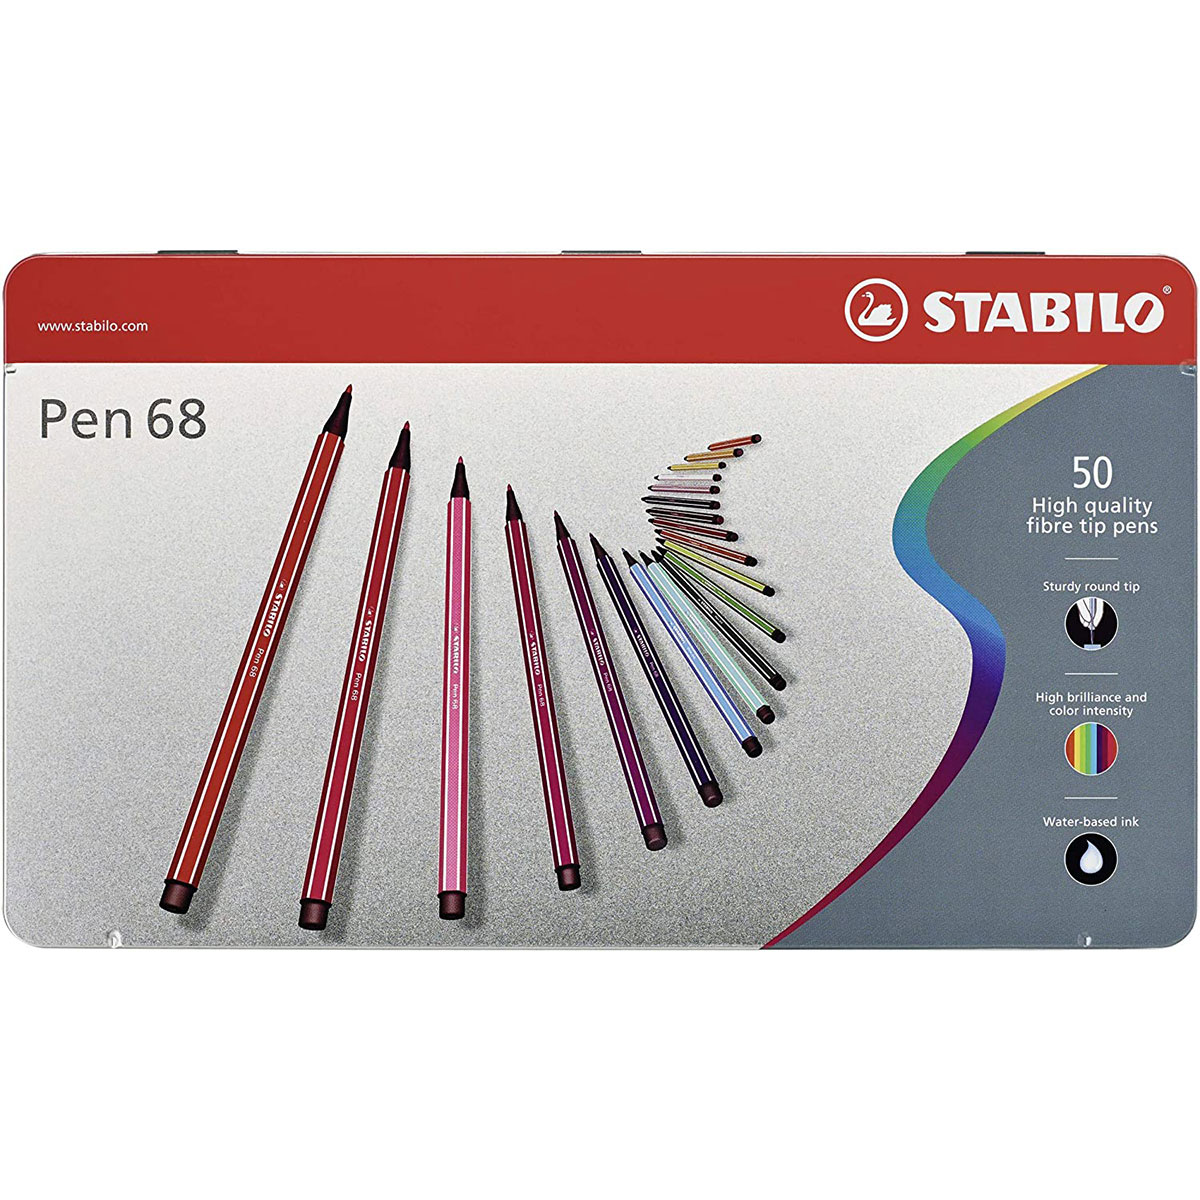 Grappig zondag bagageruimte STABILO Pen 68 viltstiften set van 50 - Suitup - Art Supplies